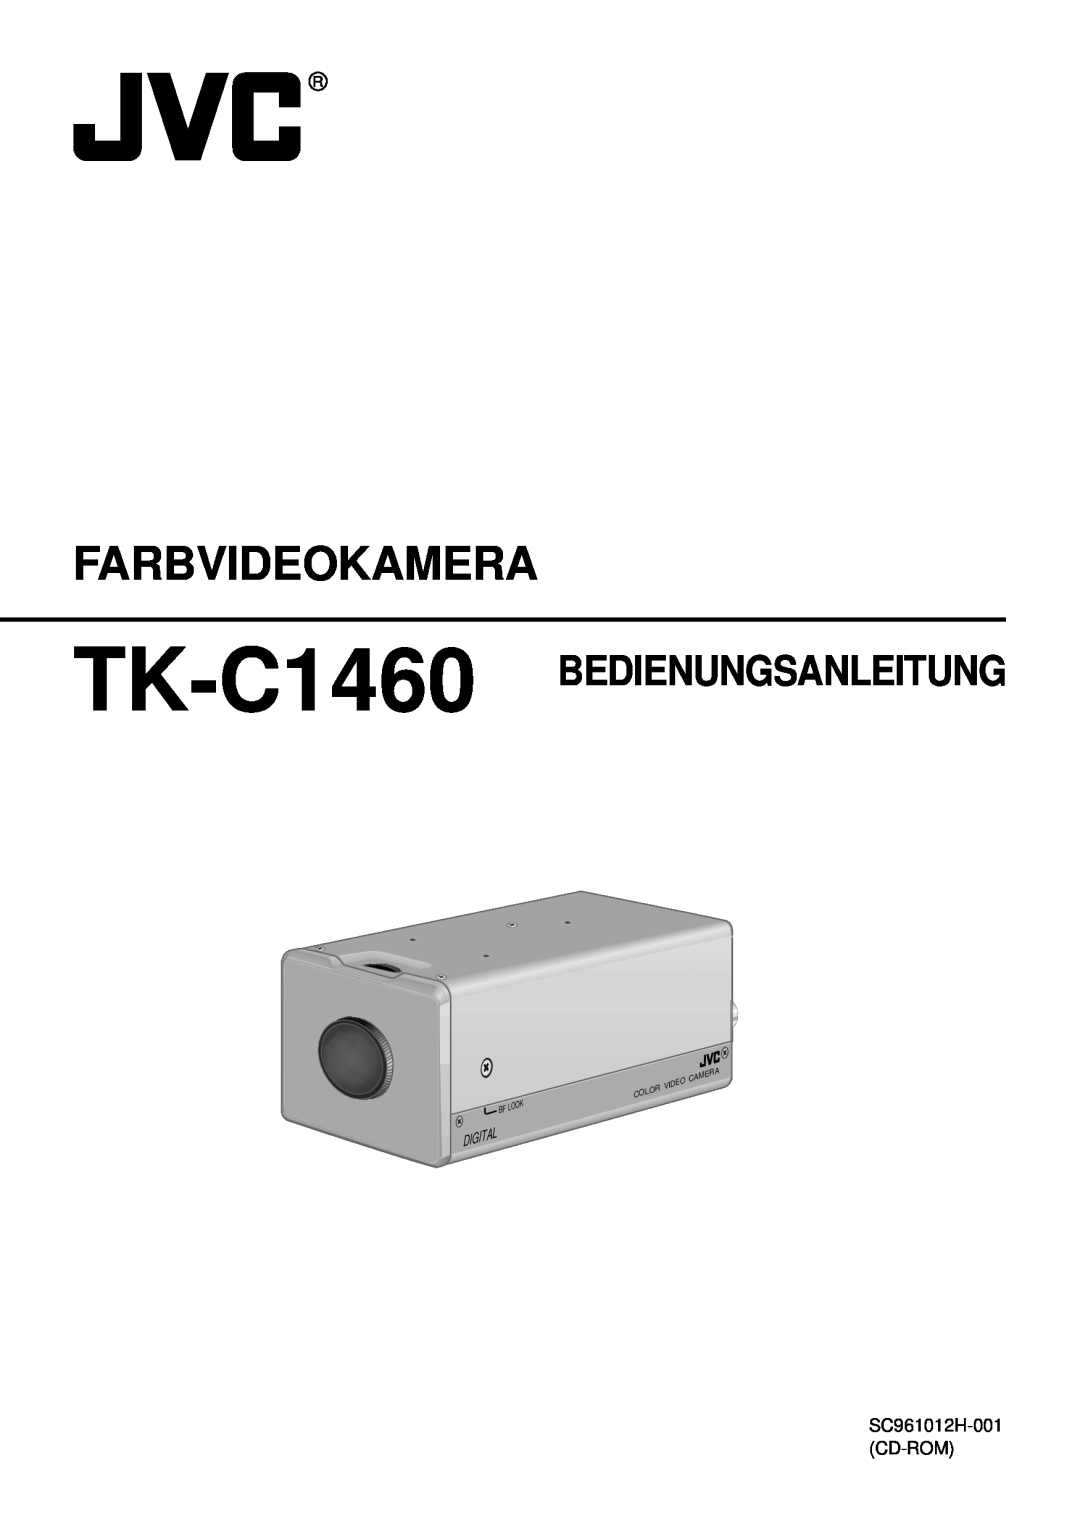 JVC manual Farbvideokamera, TK-C1460 BEDIENUNGSANLEITUNG, Digital, Video, Look 